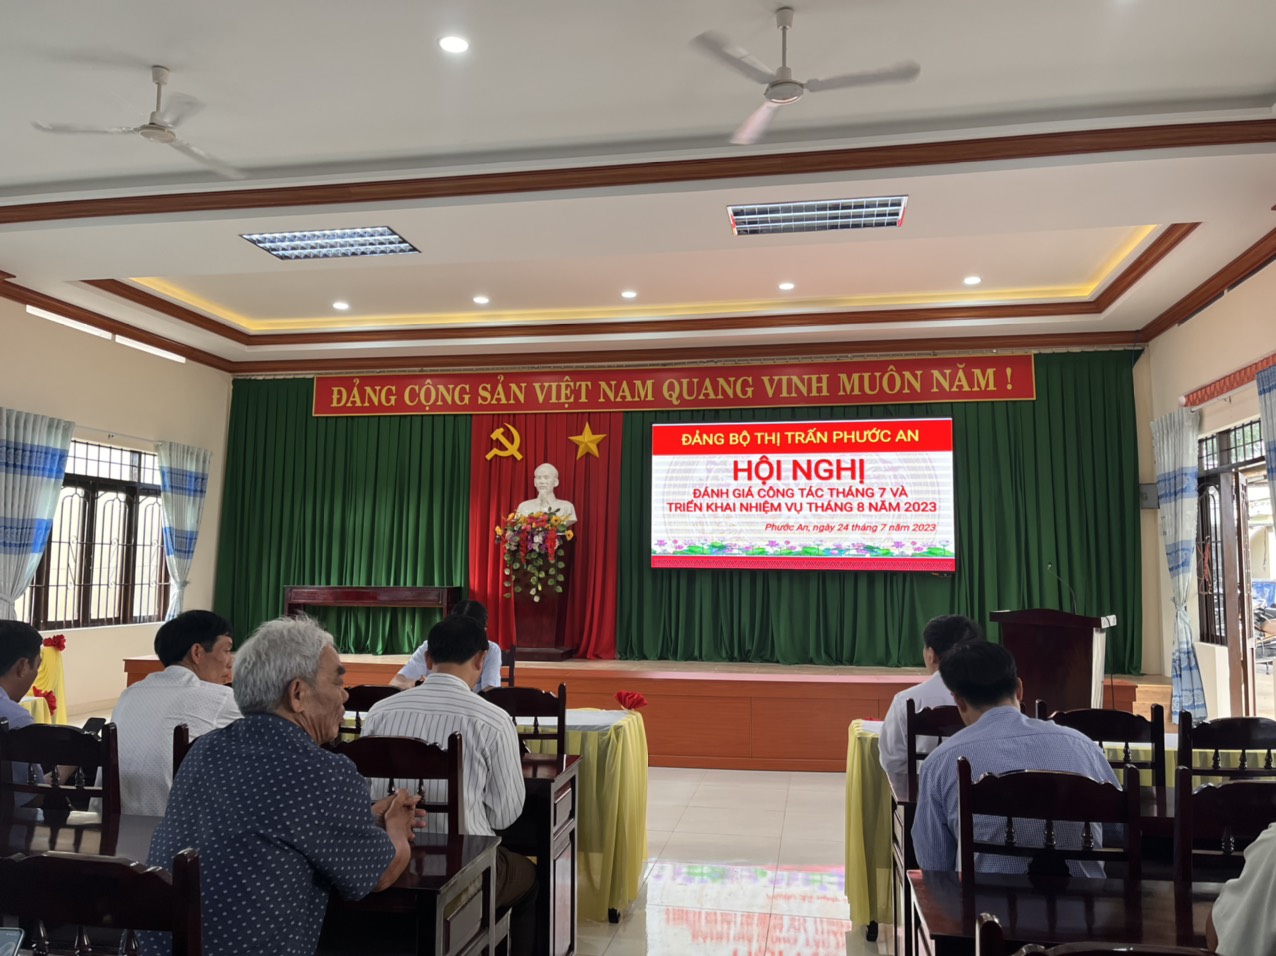 Đảng bộ Thị trấn Phước An tổ chức Hội nghị Đánh giá công tác tháng 7 và triển khai nhiệm vụ tháng 8 năm 2023